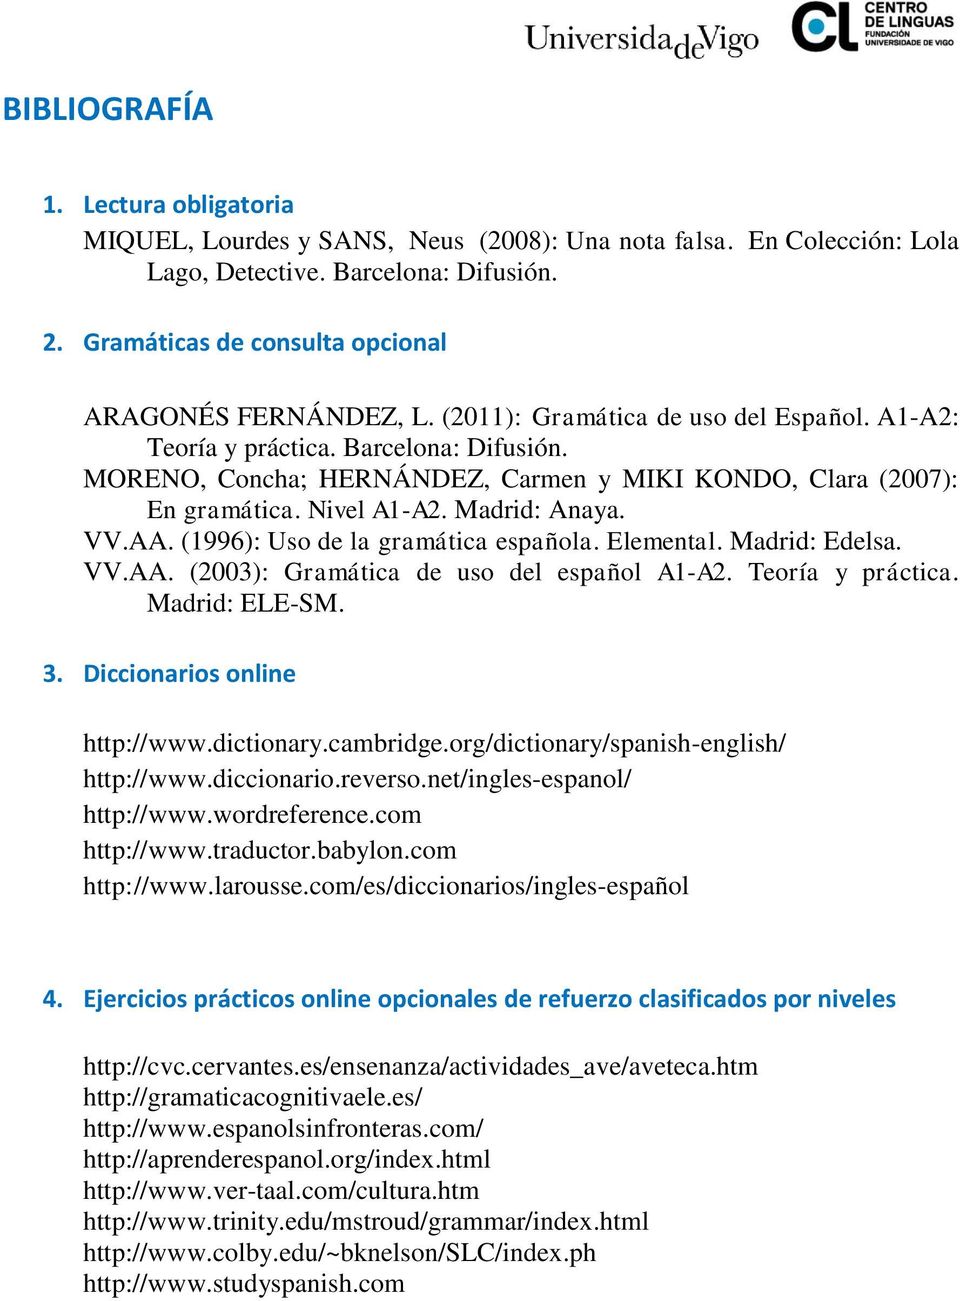 MORENO, Concha; HERNÁNDEZ, Carmen y MIKI KONDO, Clara (2007): En gramática. Nivel A1-A2. Madrid: Anaya. VV.AA. (1996): Uso de la gramática española. Elemental. Madrid: Edelsa. VV.AA. (2003): Gramática de uso del español A1-A2.